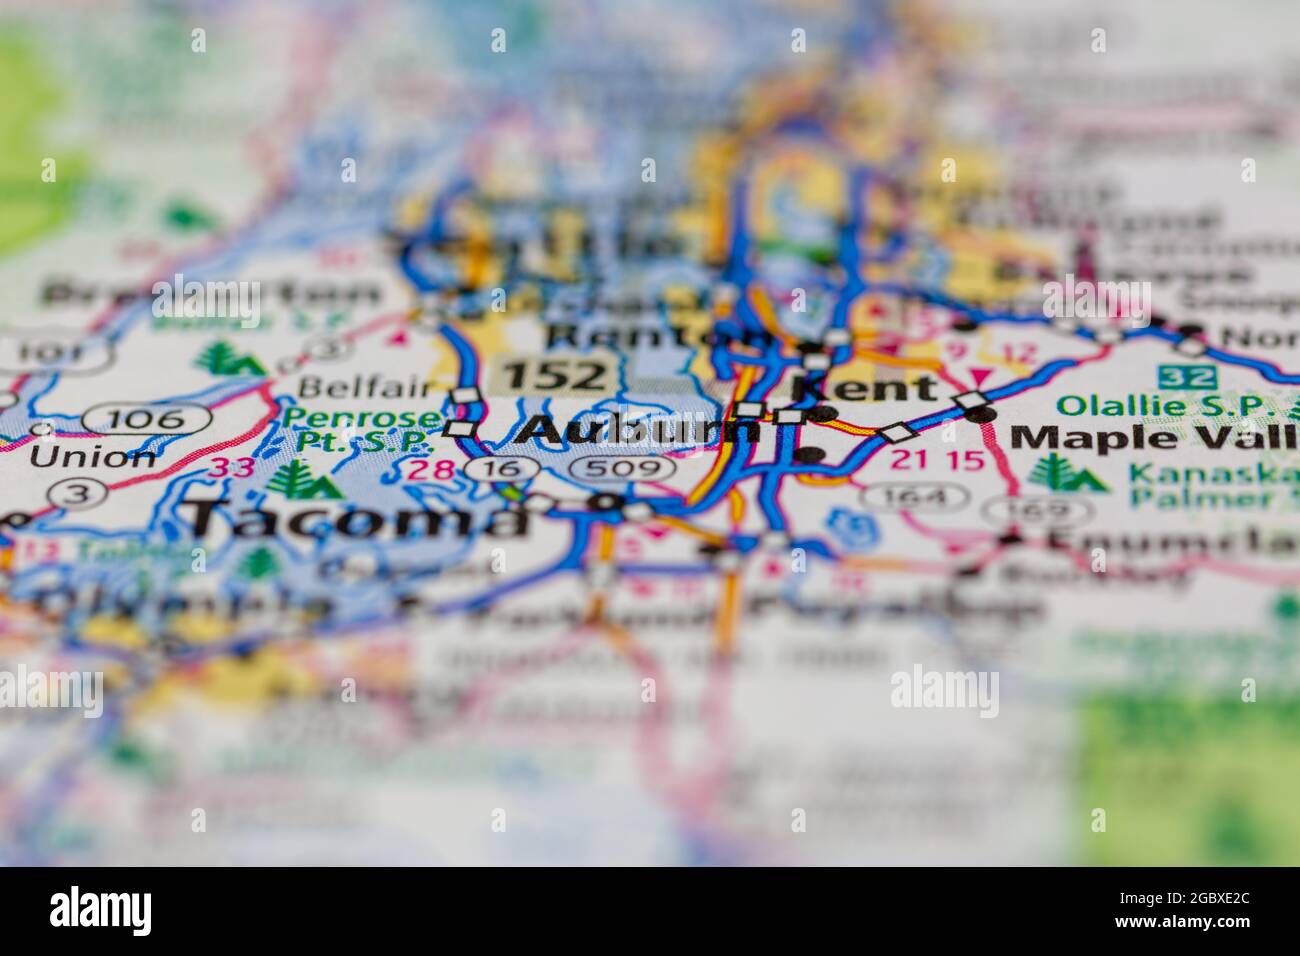 Auburn Washington State USA auf einer Straßenkarte oder Geografie-Karte angezeigt Stockfoto